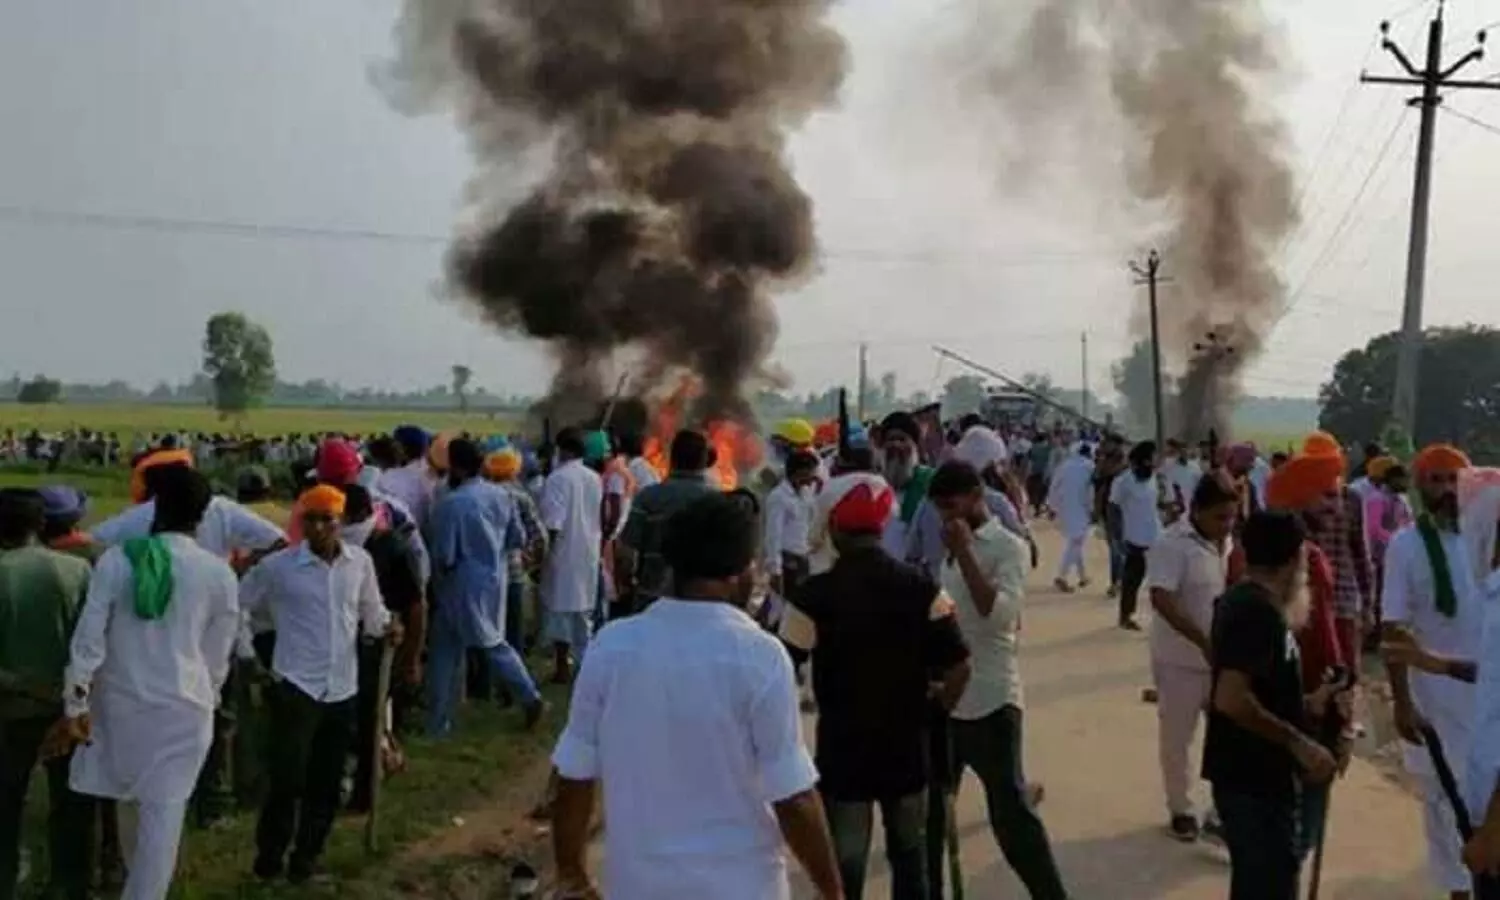 UP Politics News: लखीमपुर कांड ने ब्राह्मण राजनीति को गरमाया, इस बार भाजपा ने विपक्ष को घेरा